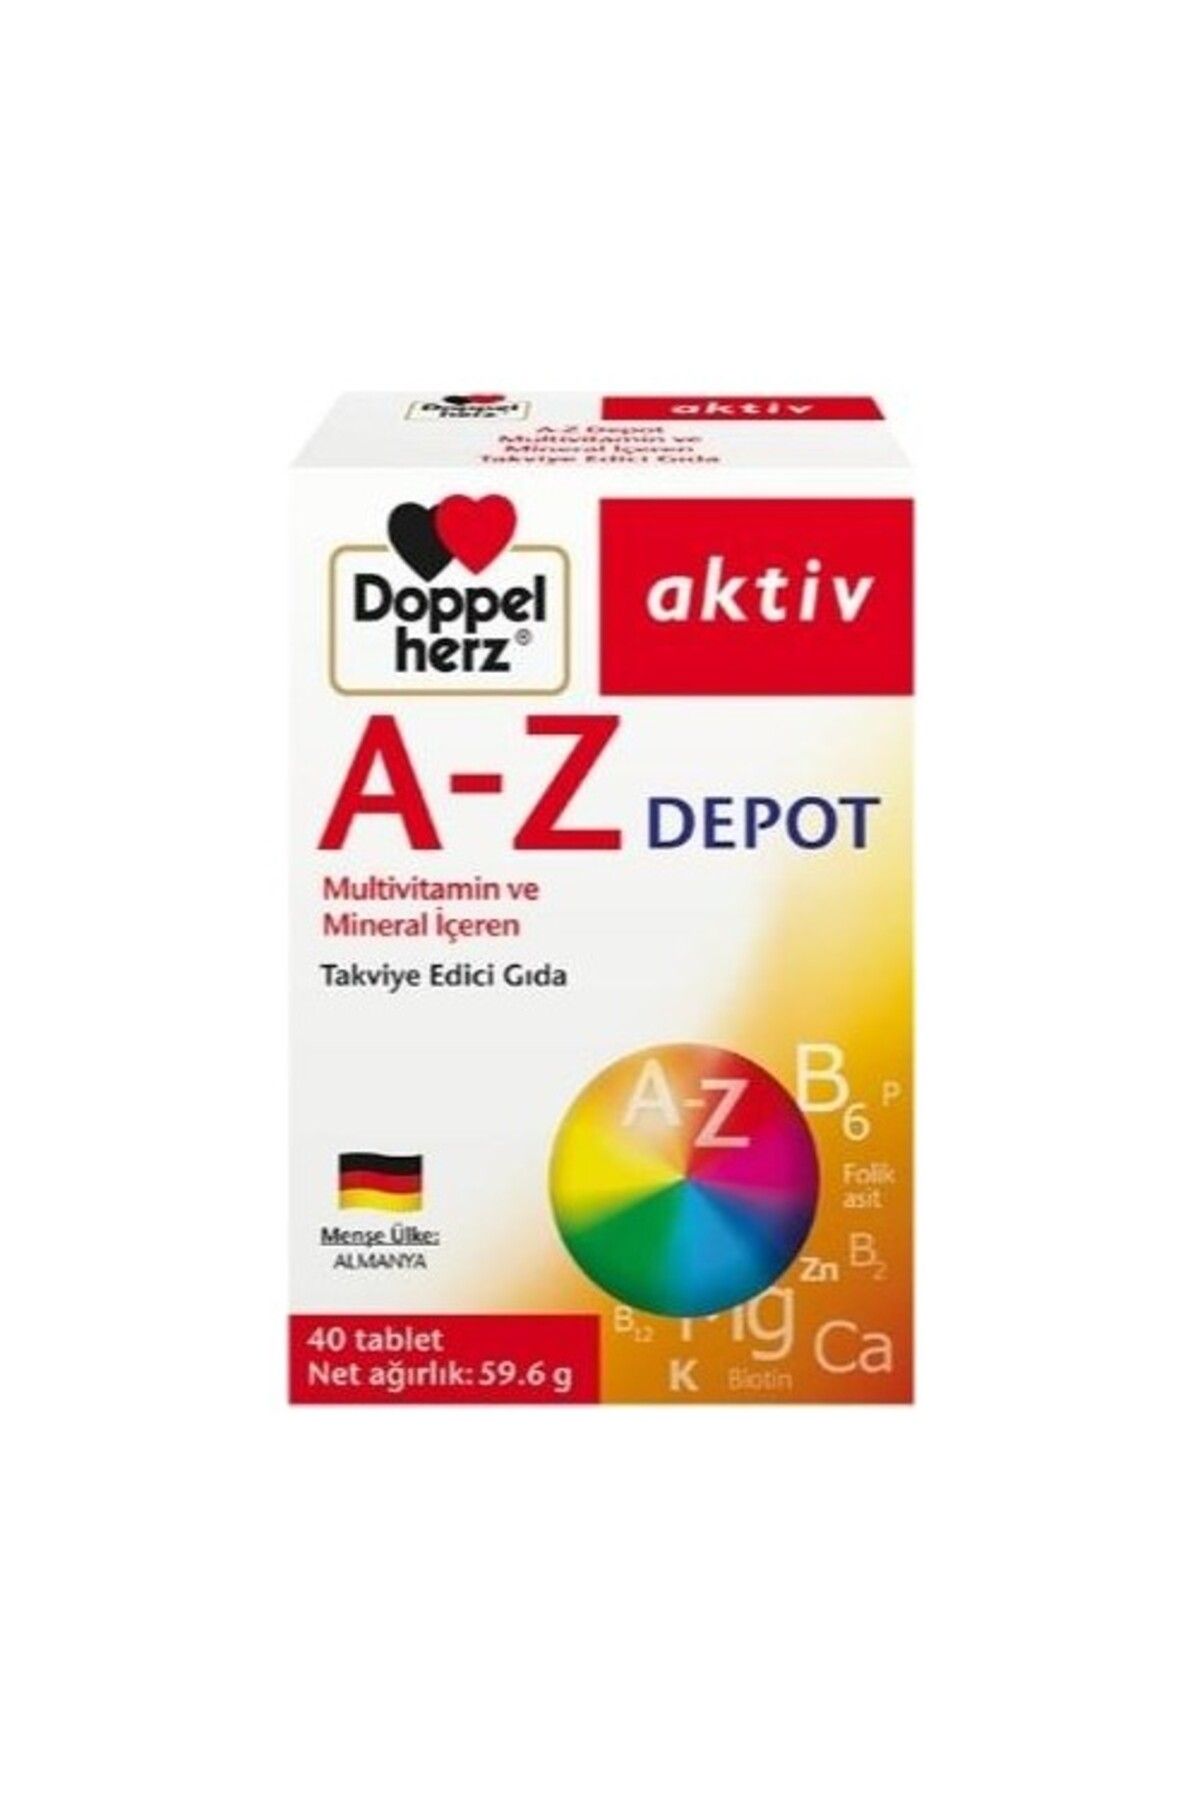 Doppelherz A-z Depot Multivitamin Içeren Takviye Edici Gıda 40 Tablet